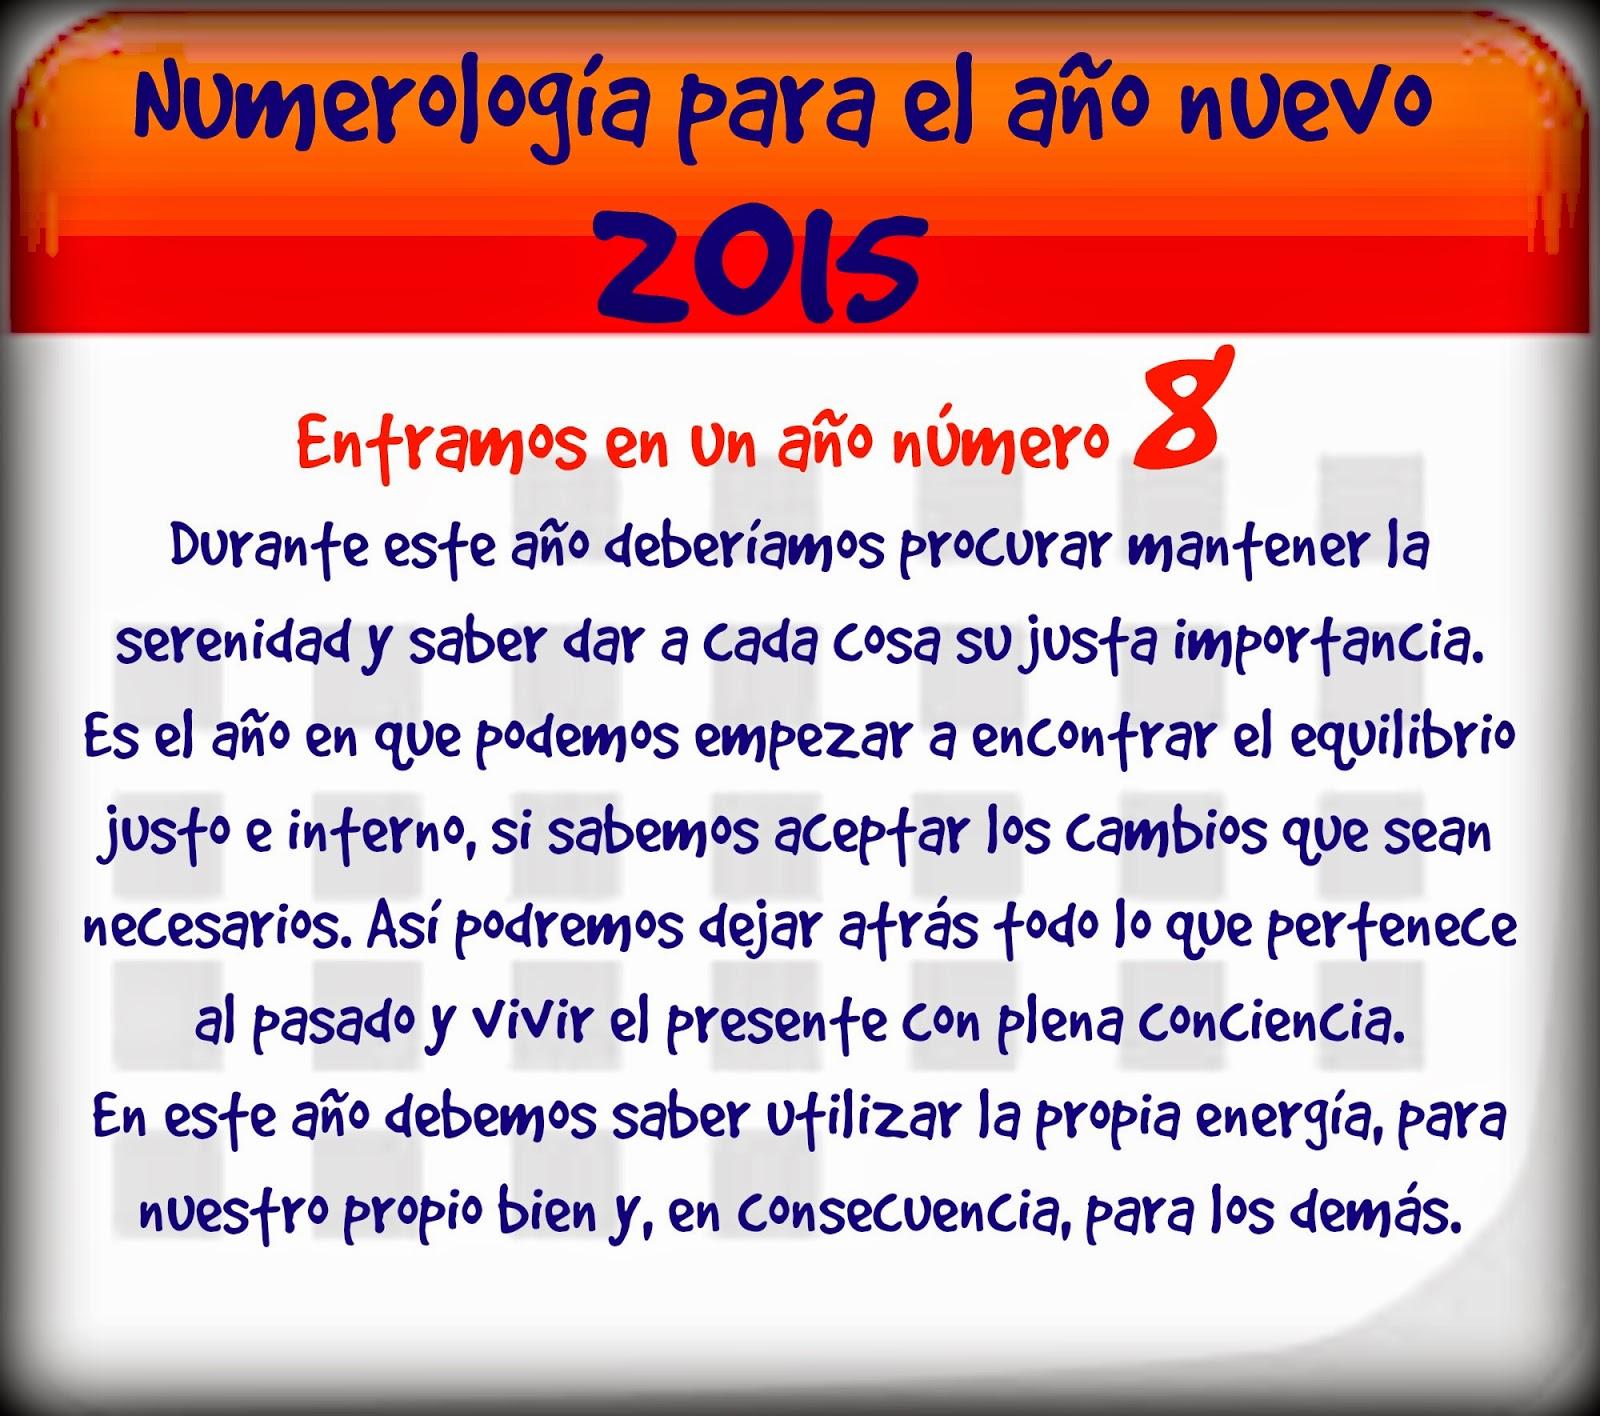 Numerología para el nuevo año 2015